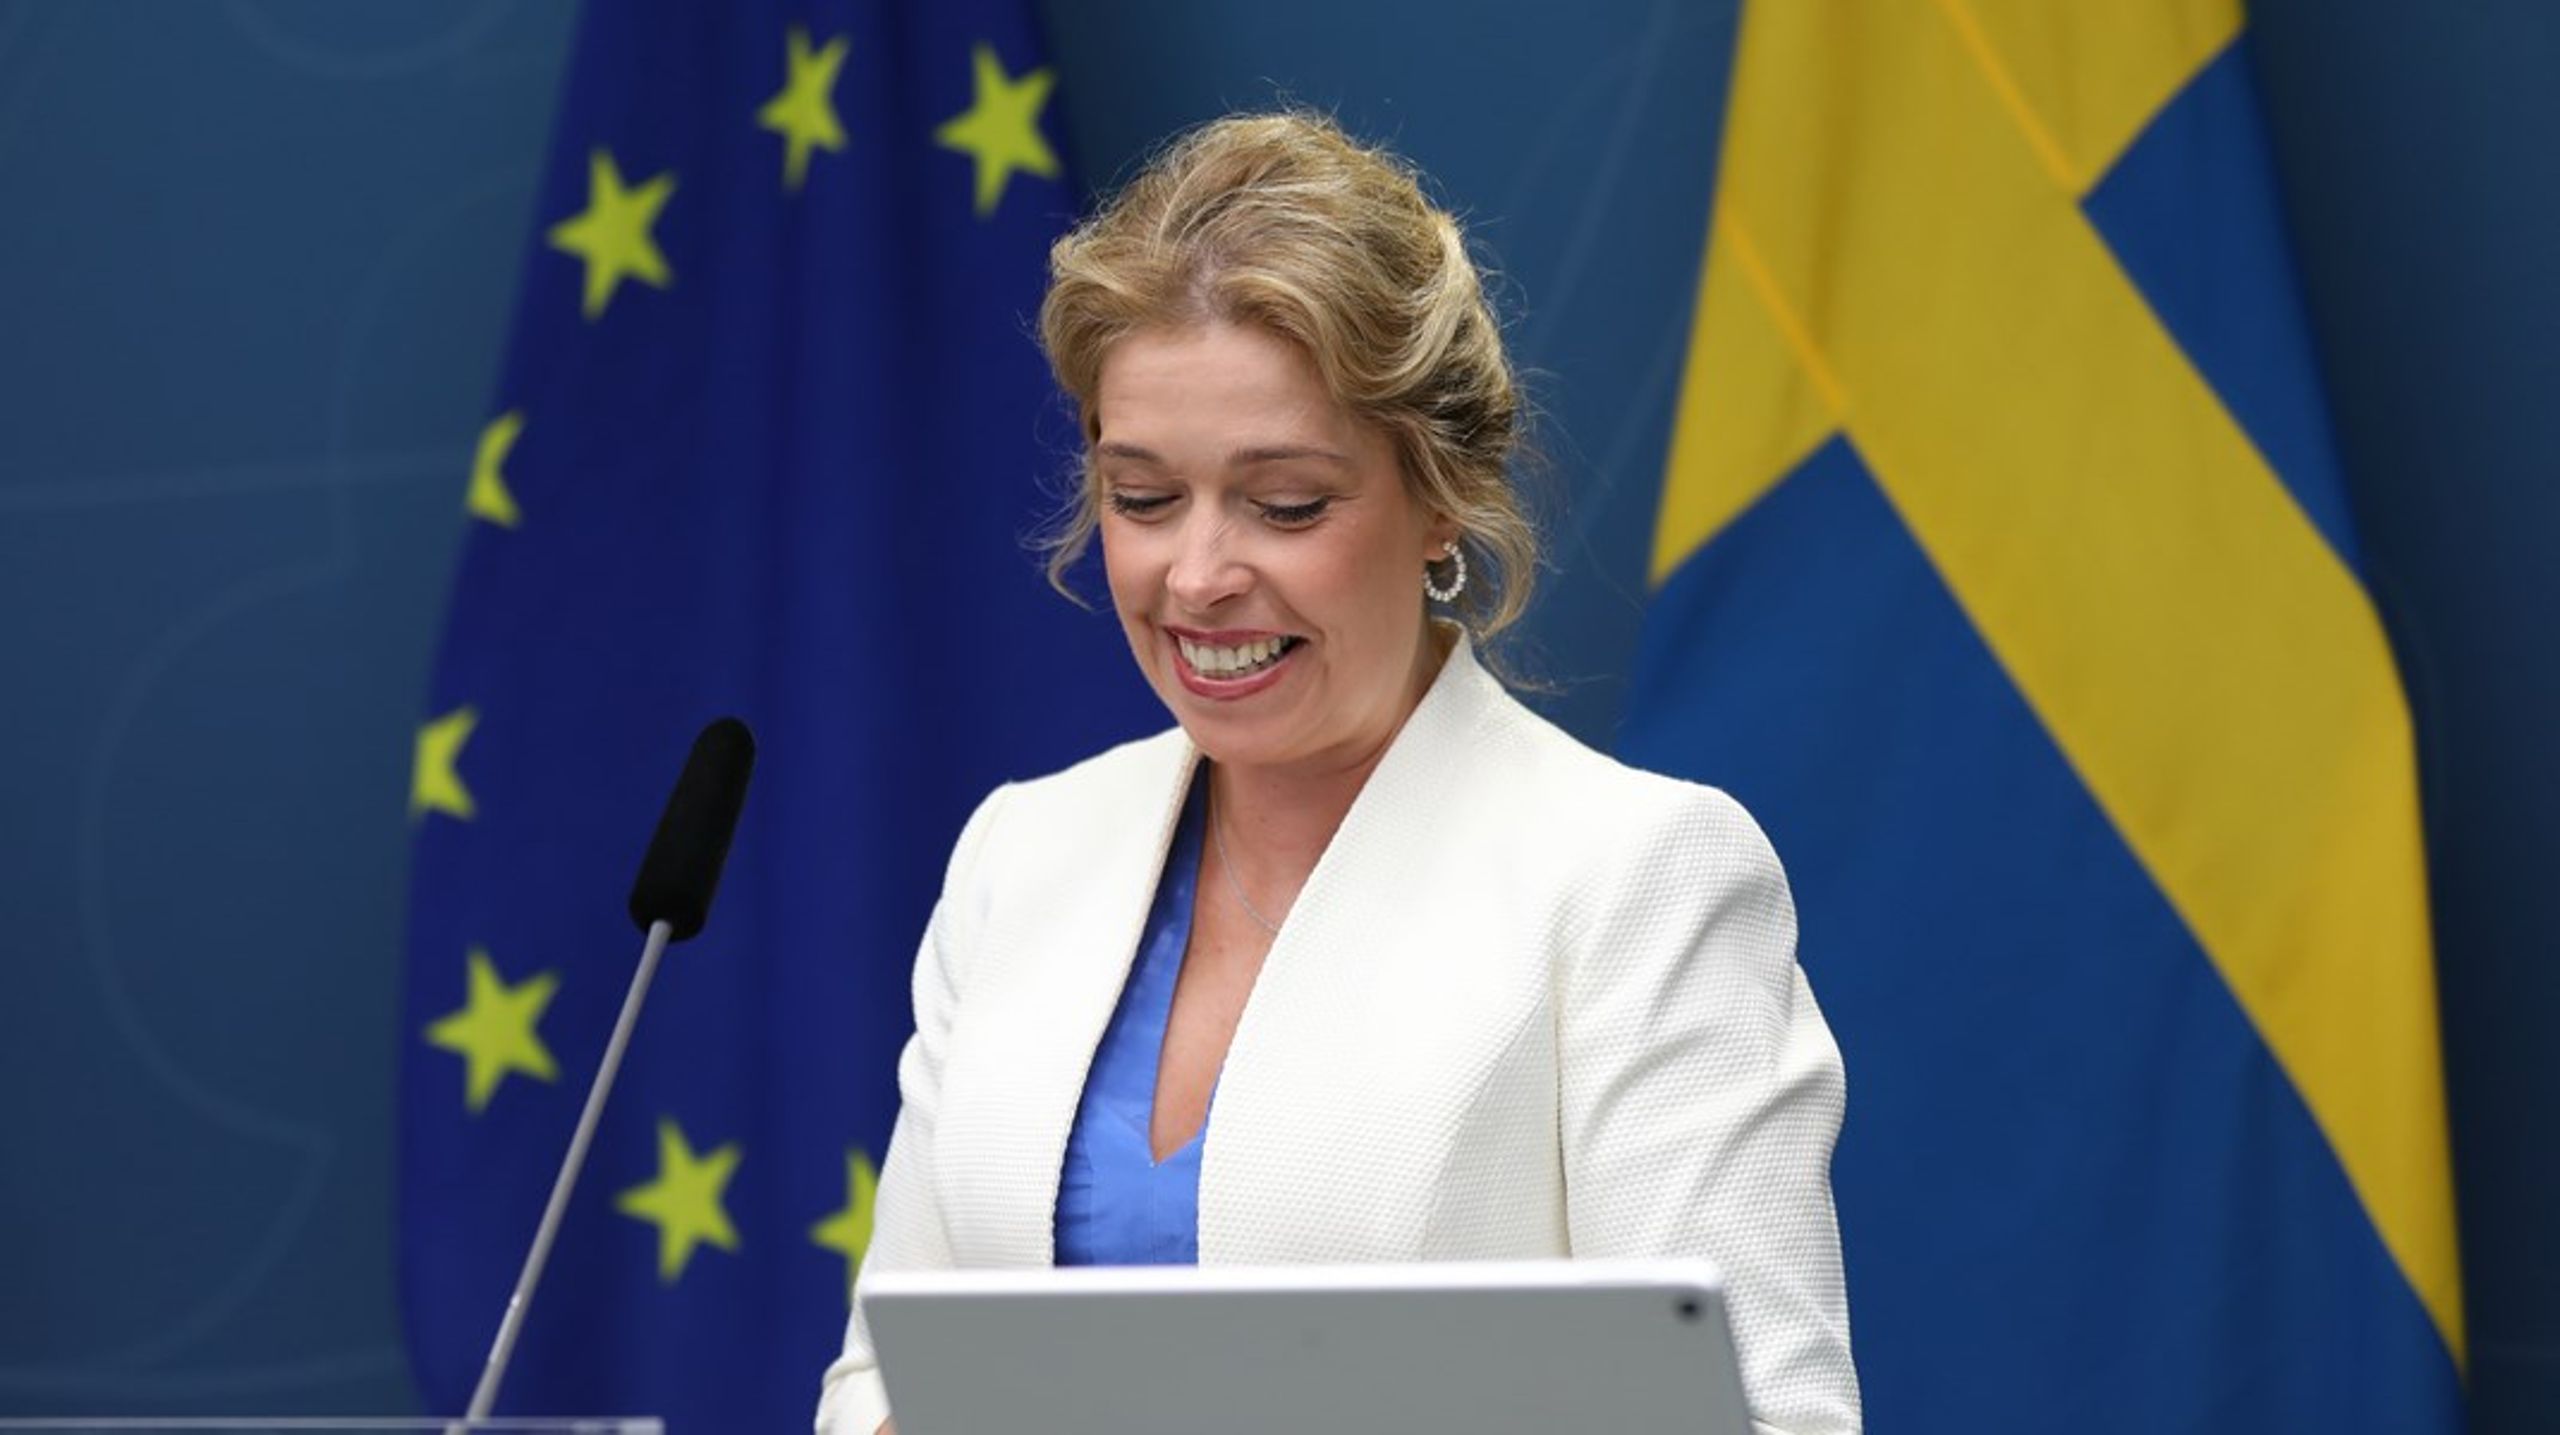 Klimat- och miljöminister Annika Strandhäll utlovar en utredning om krav på solpaneler på offentliga och kommersiella byggnader – liknande krav finns på förslag&nbsp;från EU-kommissionen.